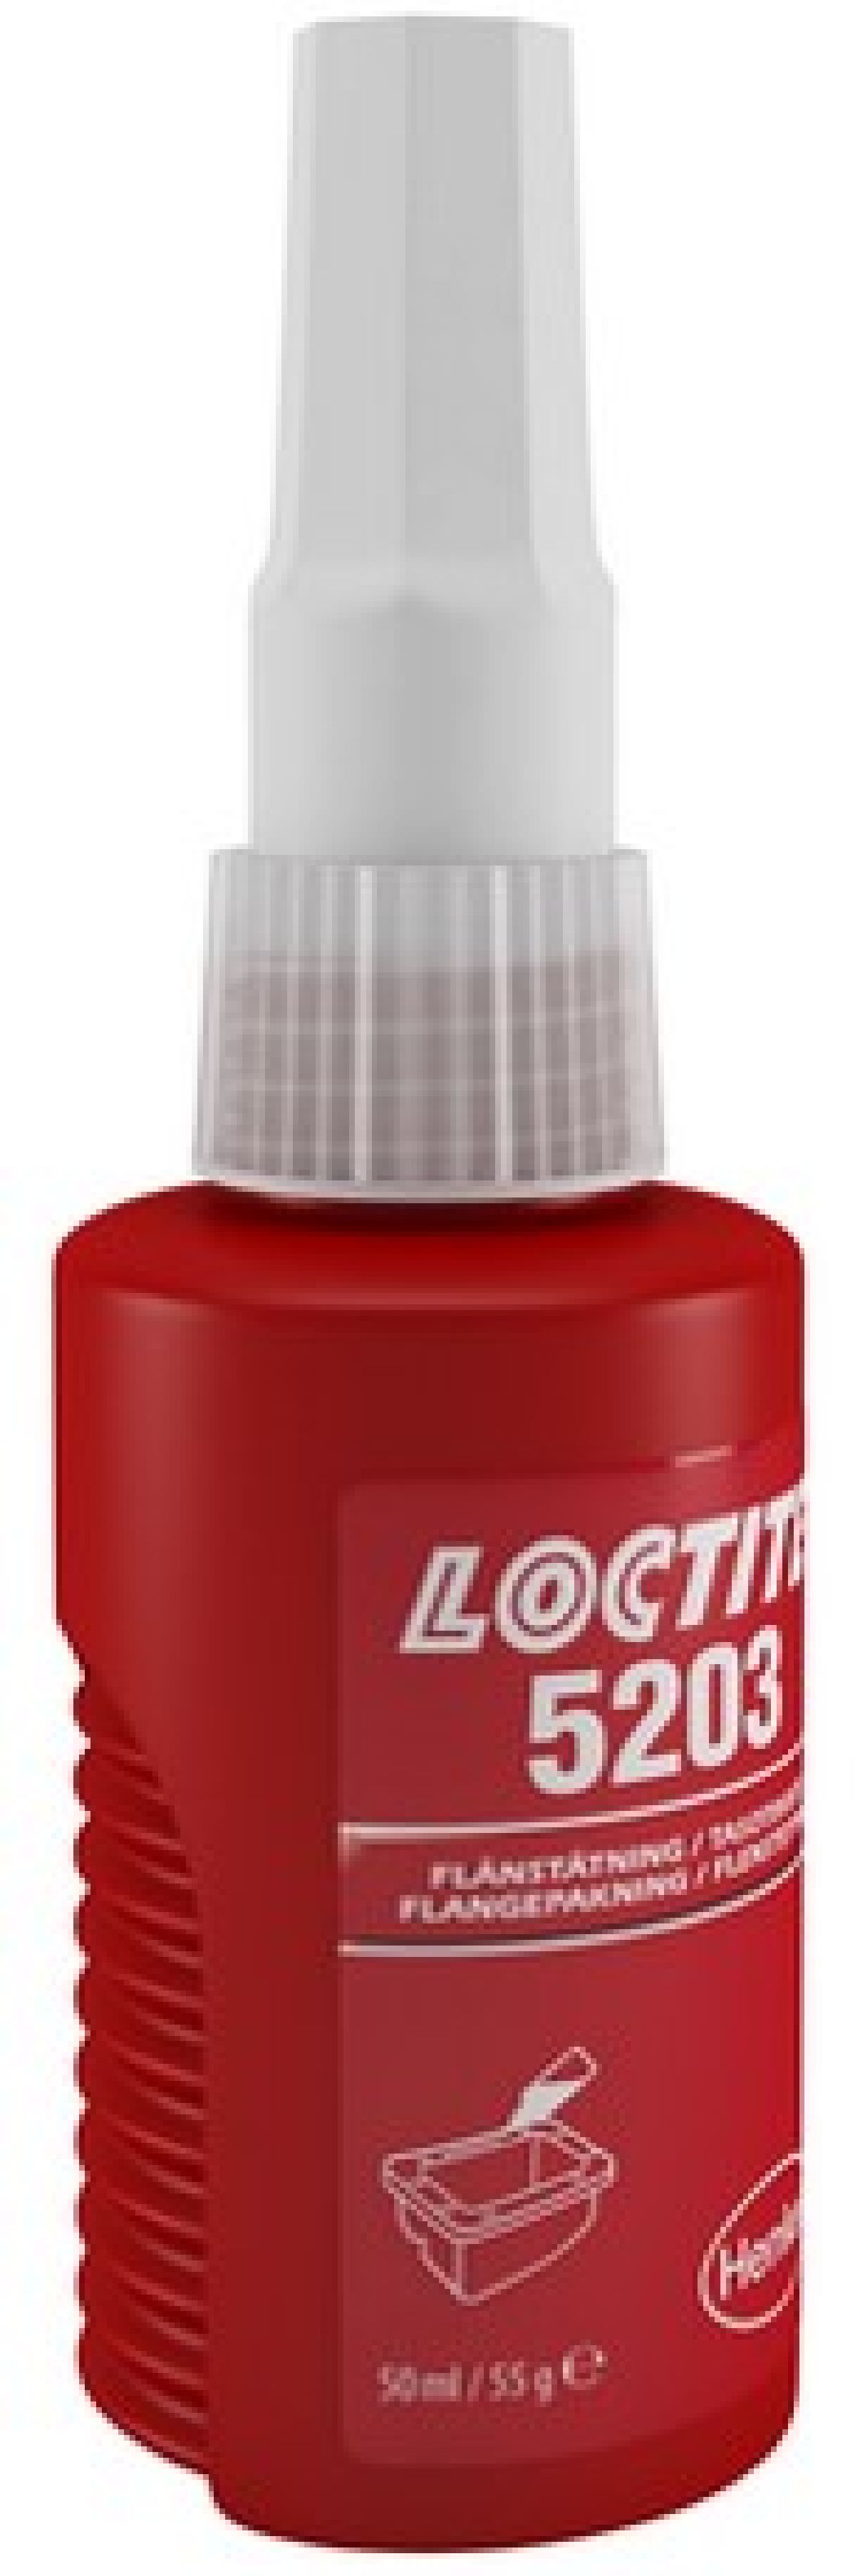 Loctite 5203